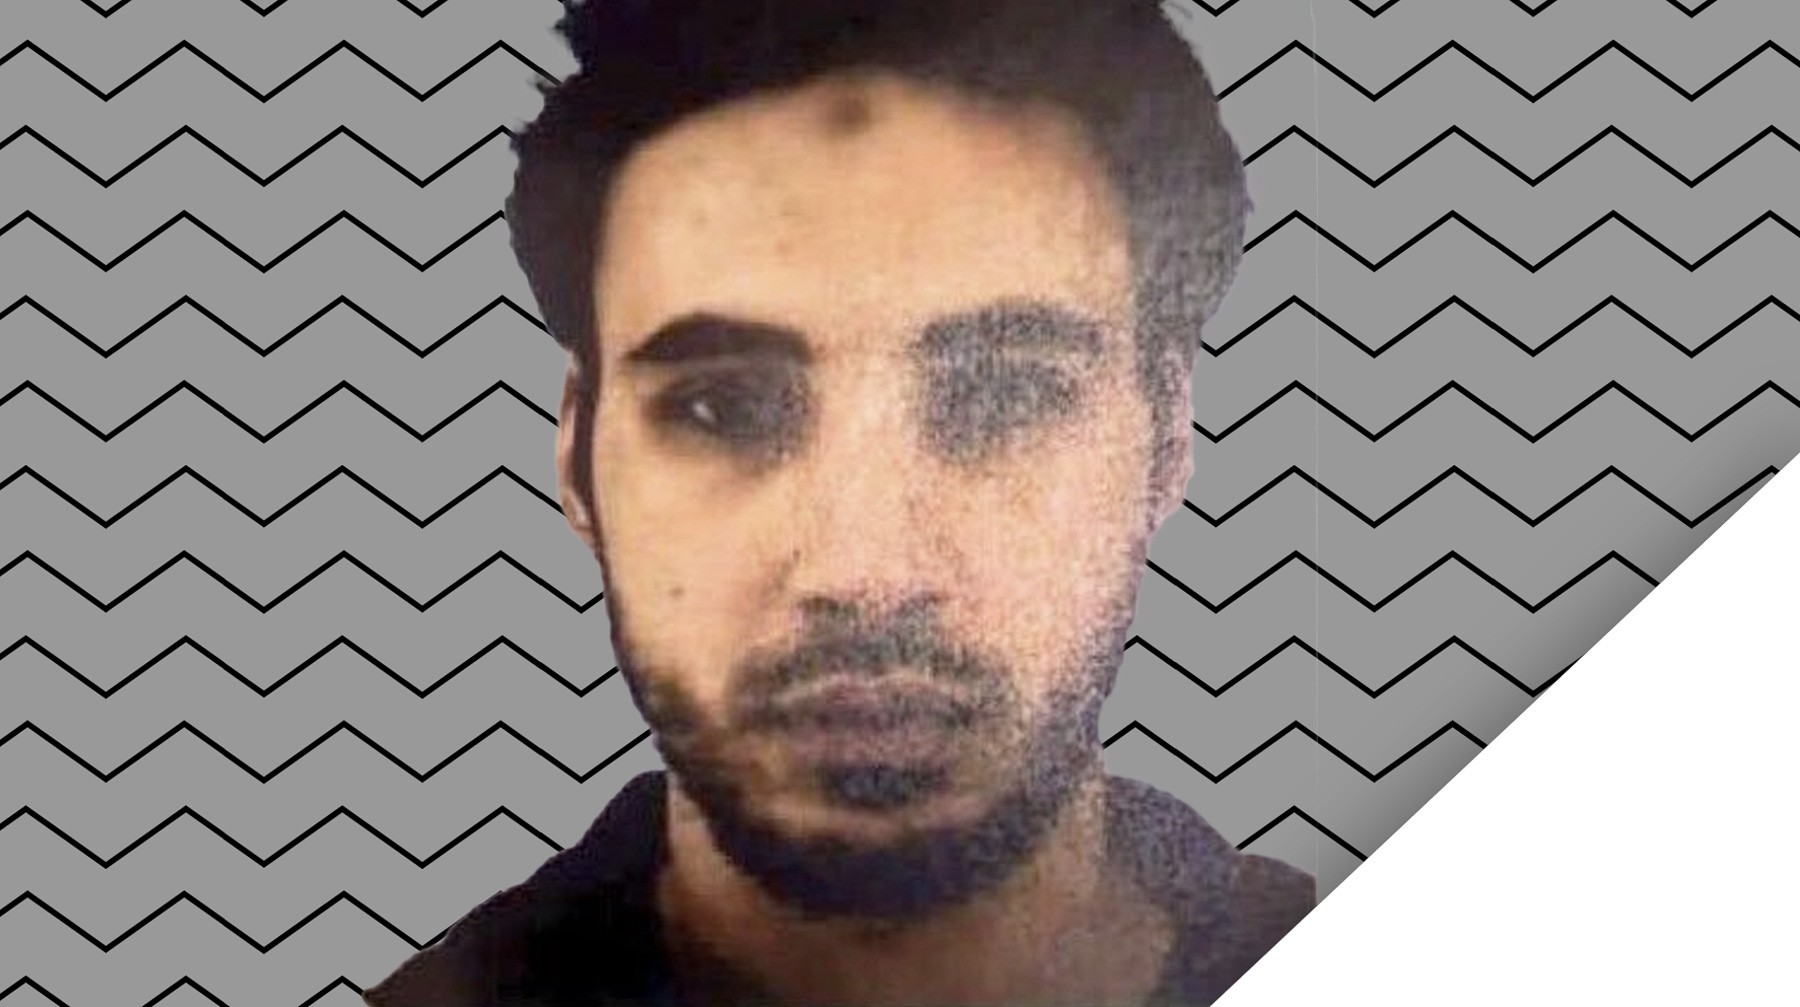 Dailystorm - Появилось фото 29-летнего террориста из Страсбурга